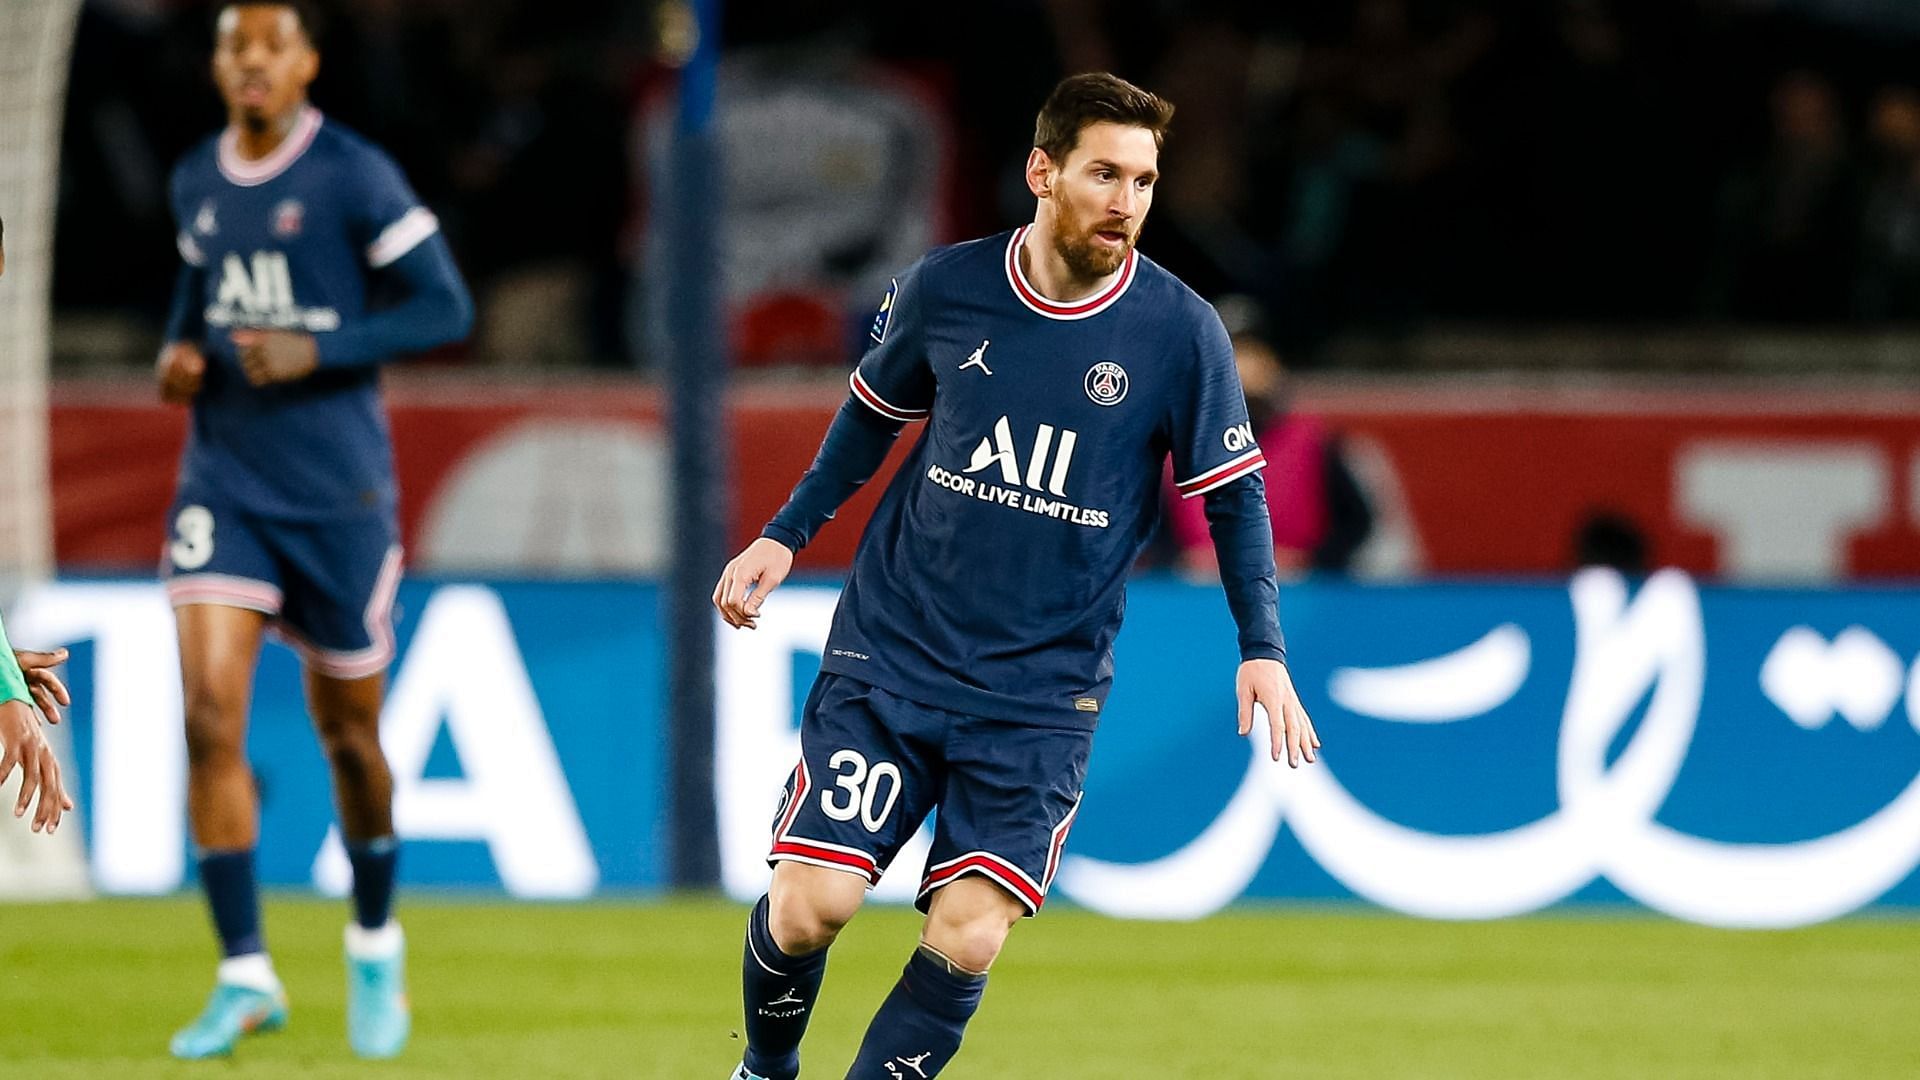 Lionel Messi in action (cred: Stadium Astro)